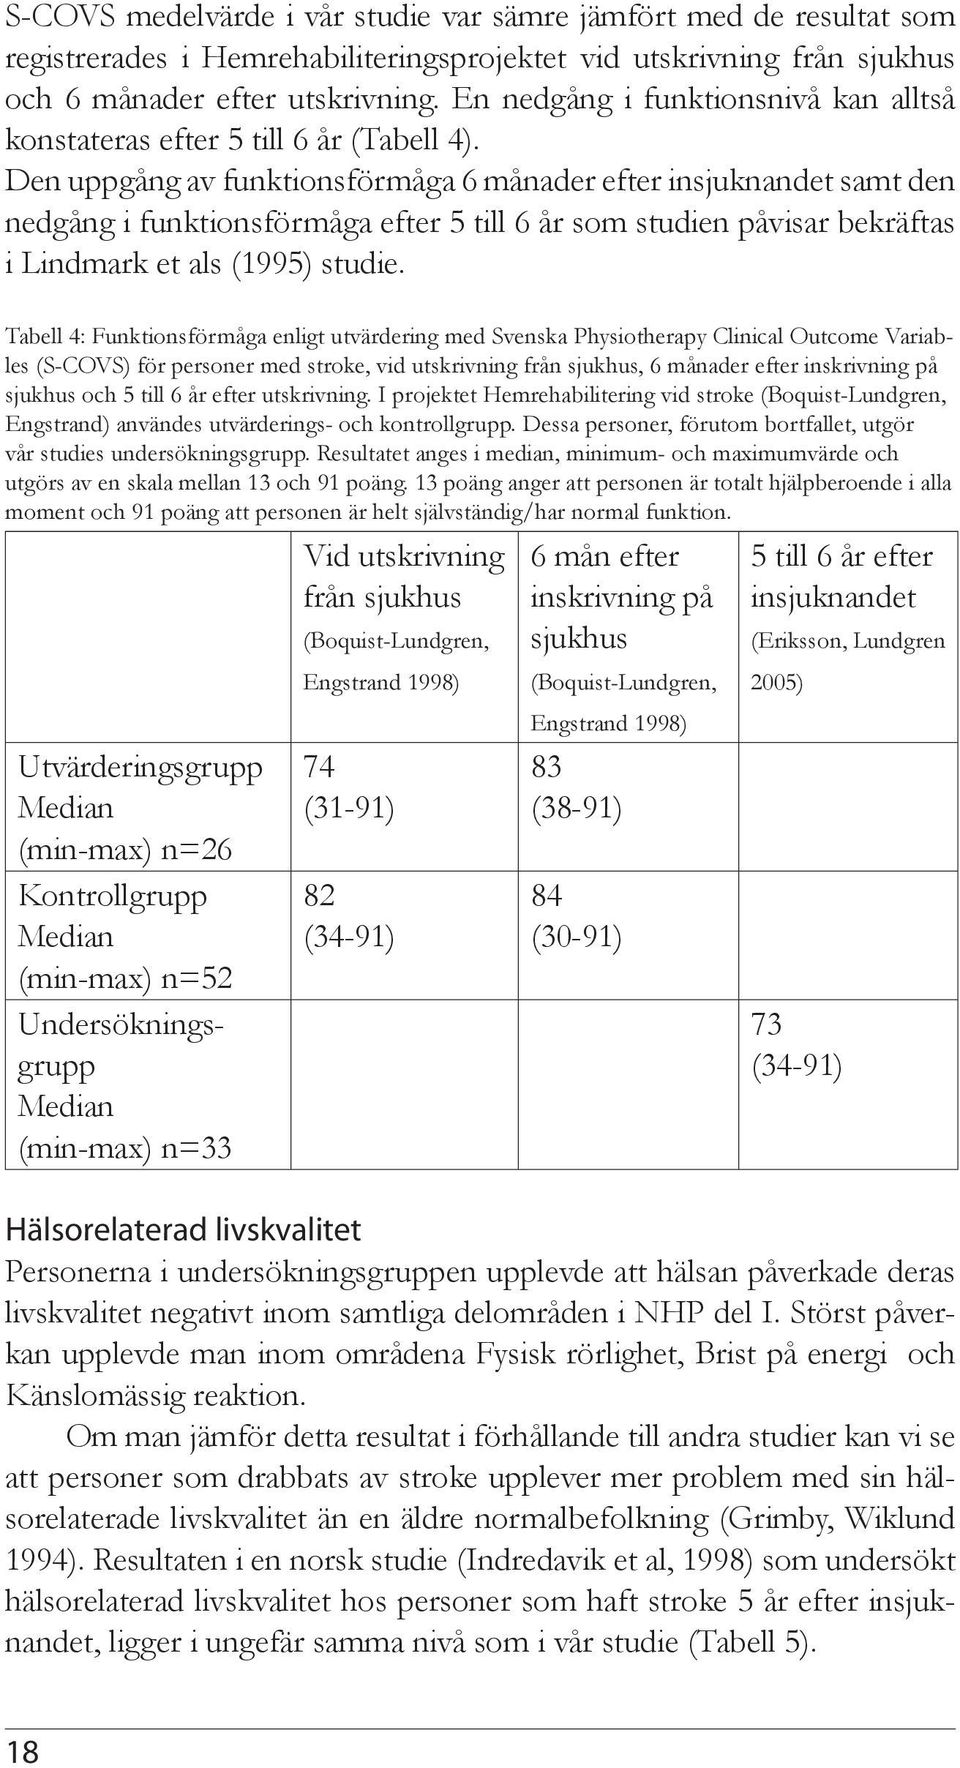 Den uppgång av funktionsförmåga 6 månader efter insjuknandet samt den nedgång i funktionsförmåga efter 5 till 6 år som studien påvisar bekräftas i Lindmark et als (1995) studie.